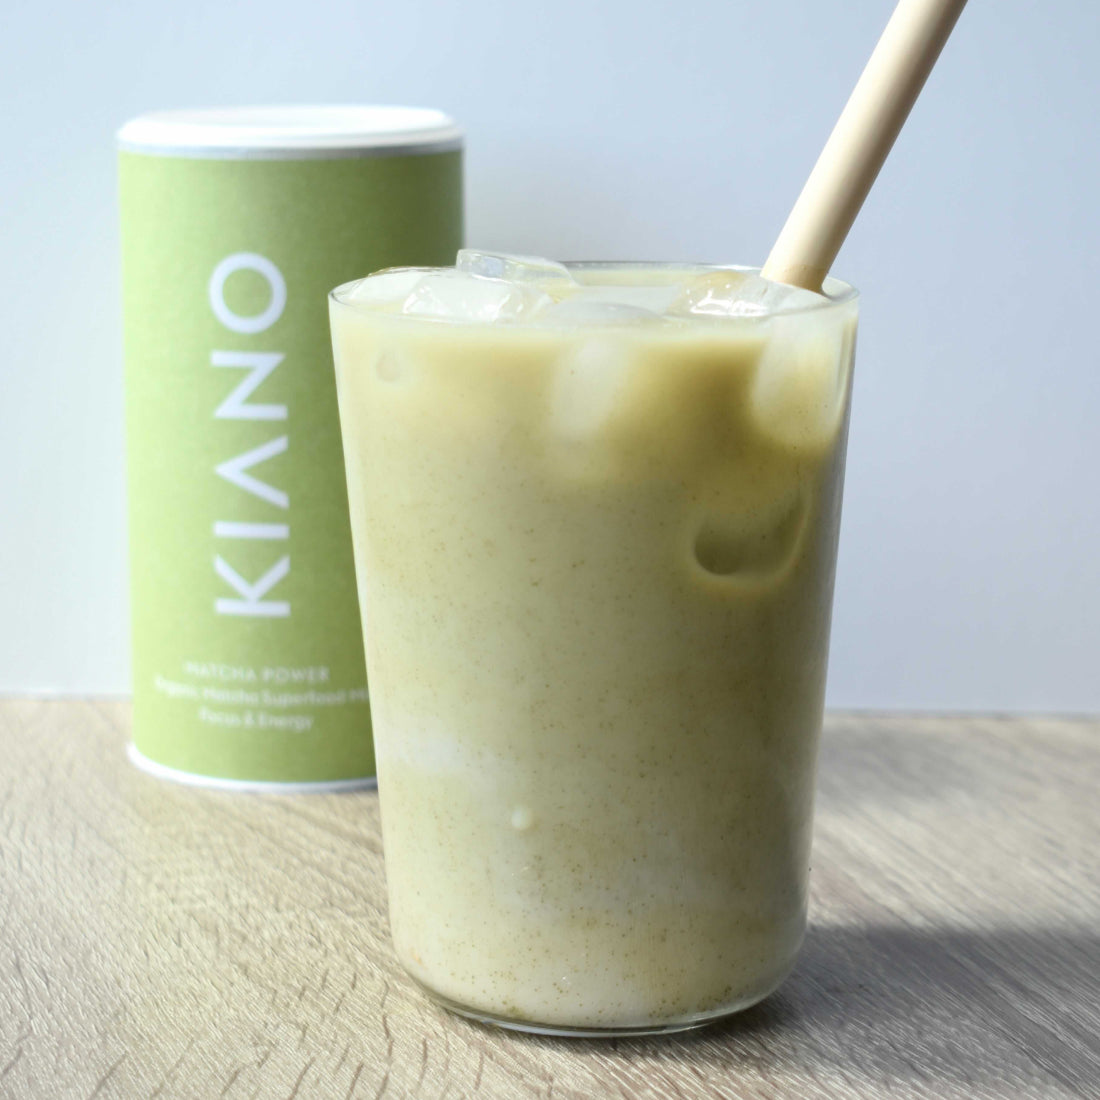 Bringen Sie neue Energie in den Tag mit KIANOs Magic Matcha Latte in einem Frucht-Smoothie